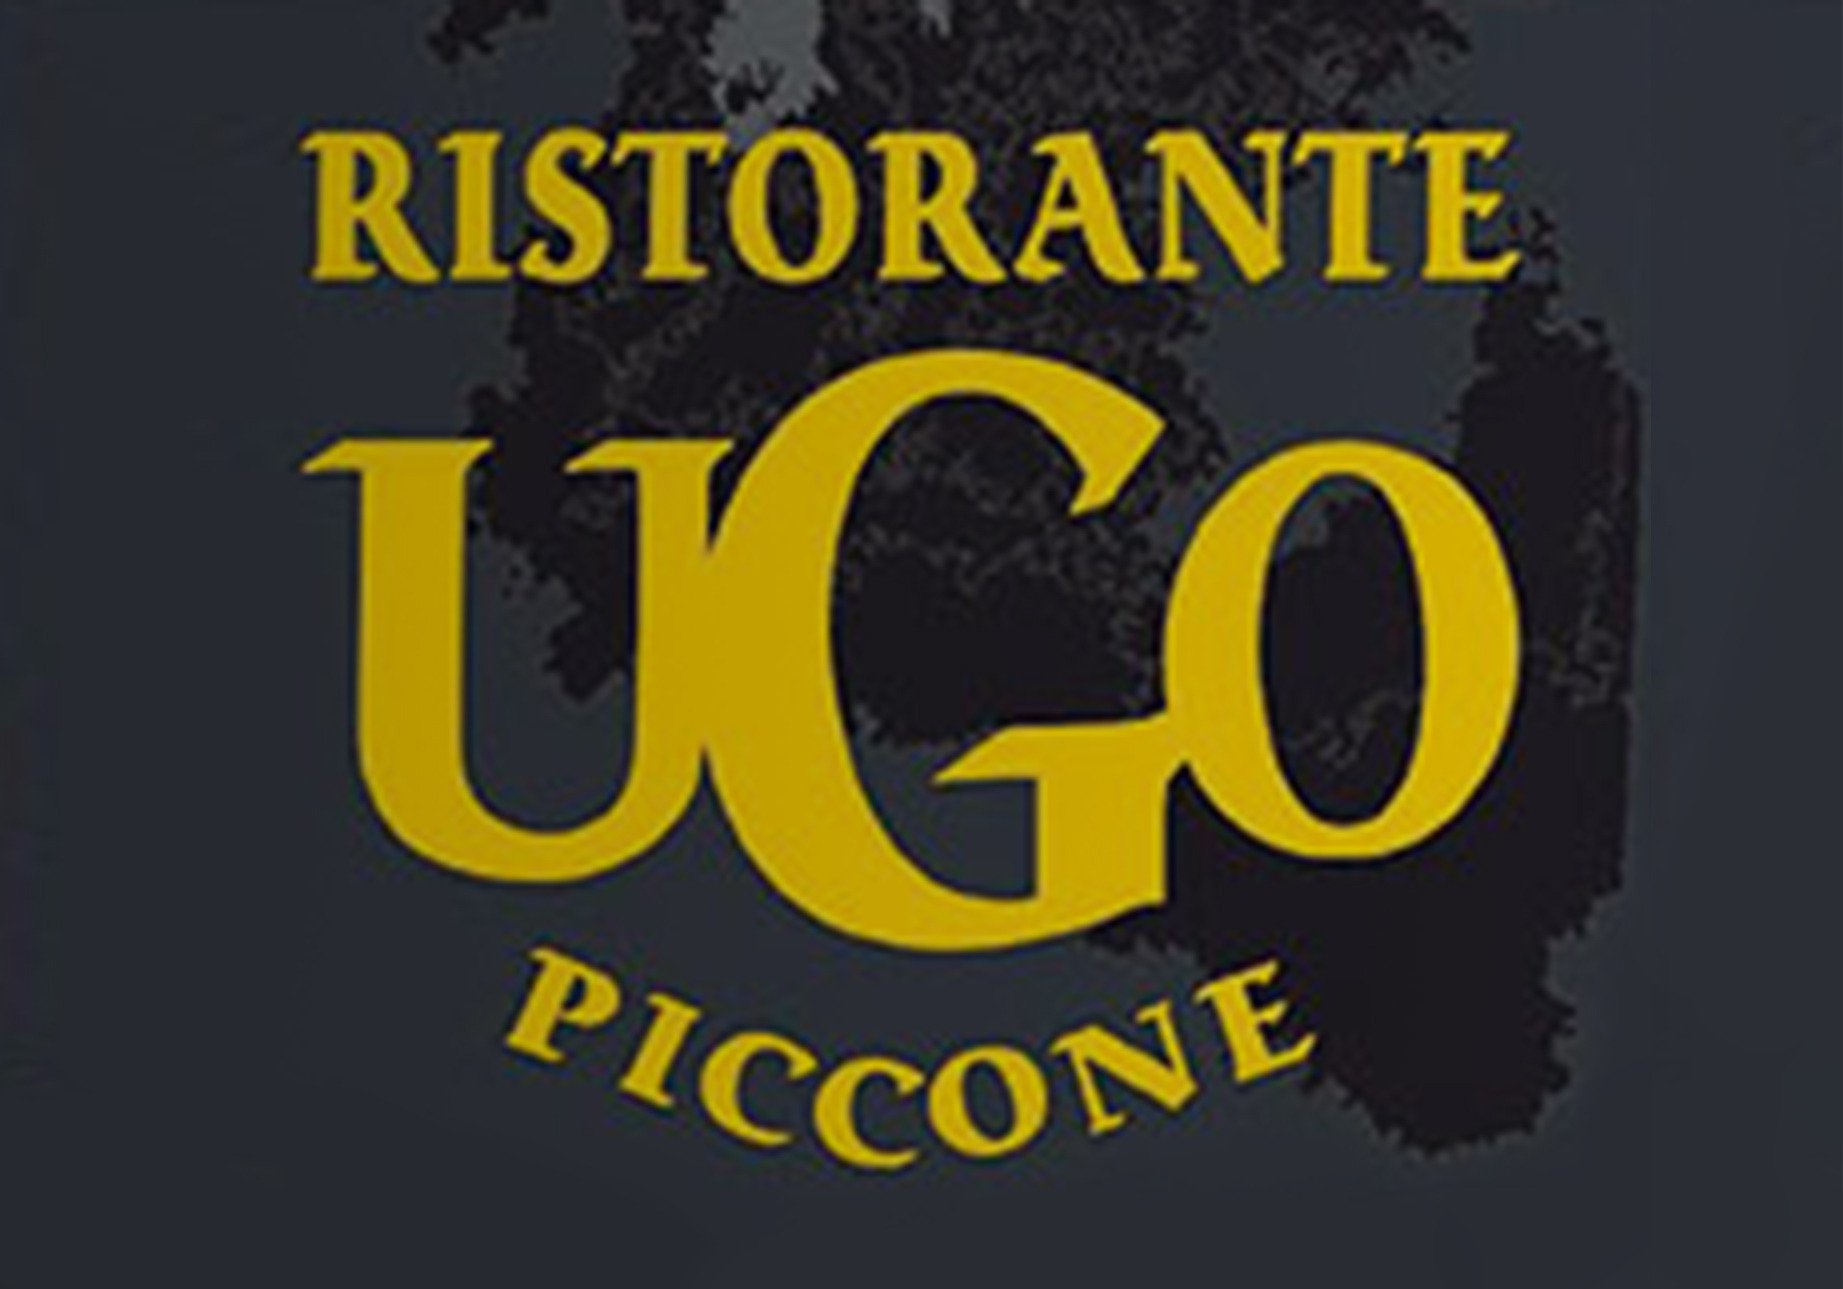 Ristorante Ugo Piccone, Celano